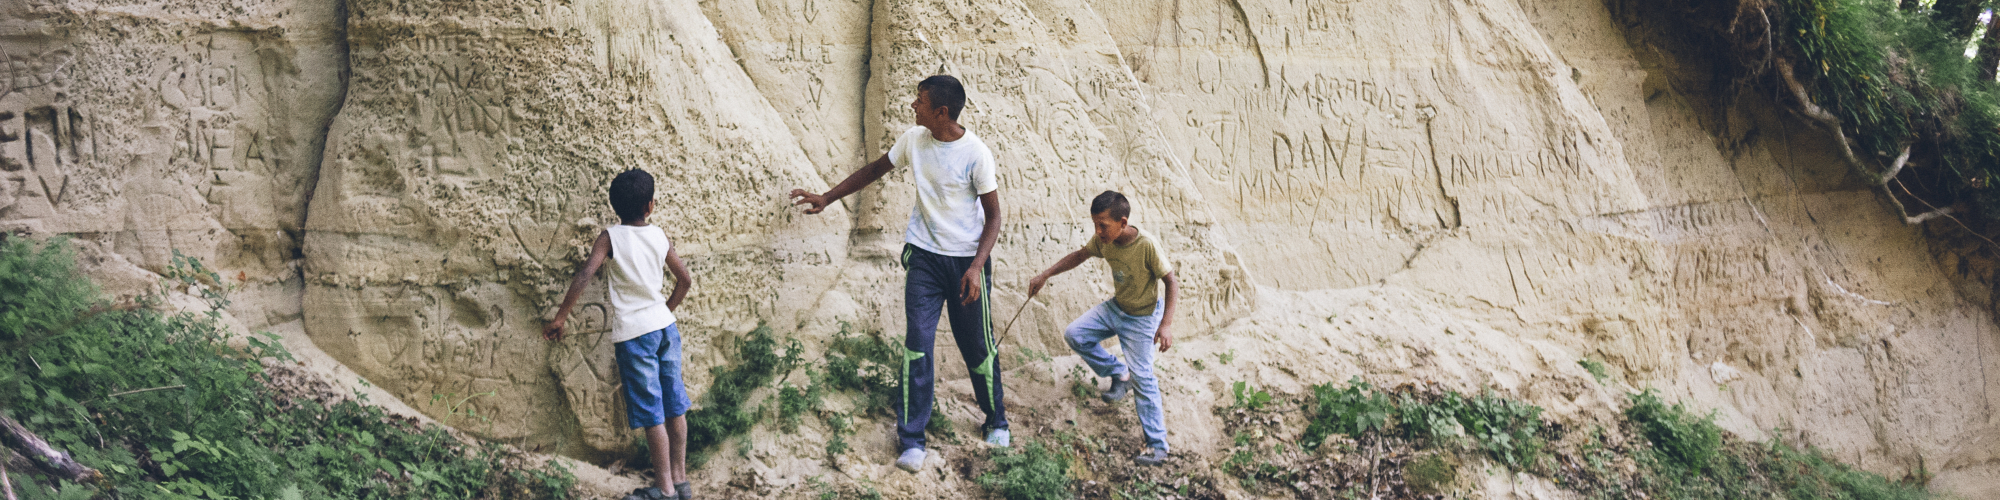 junger Mann und zwei Kinder vor einer Felswand